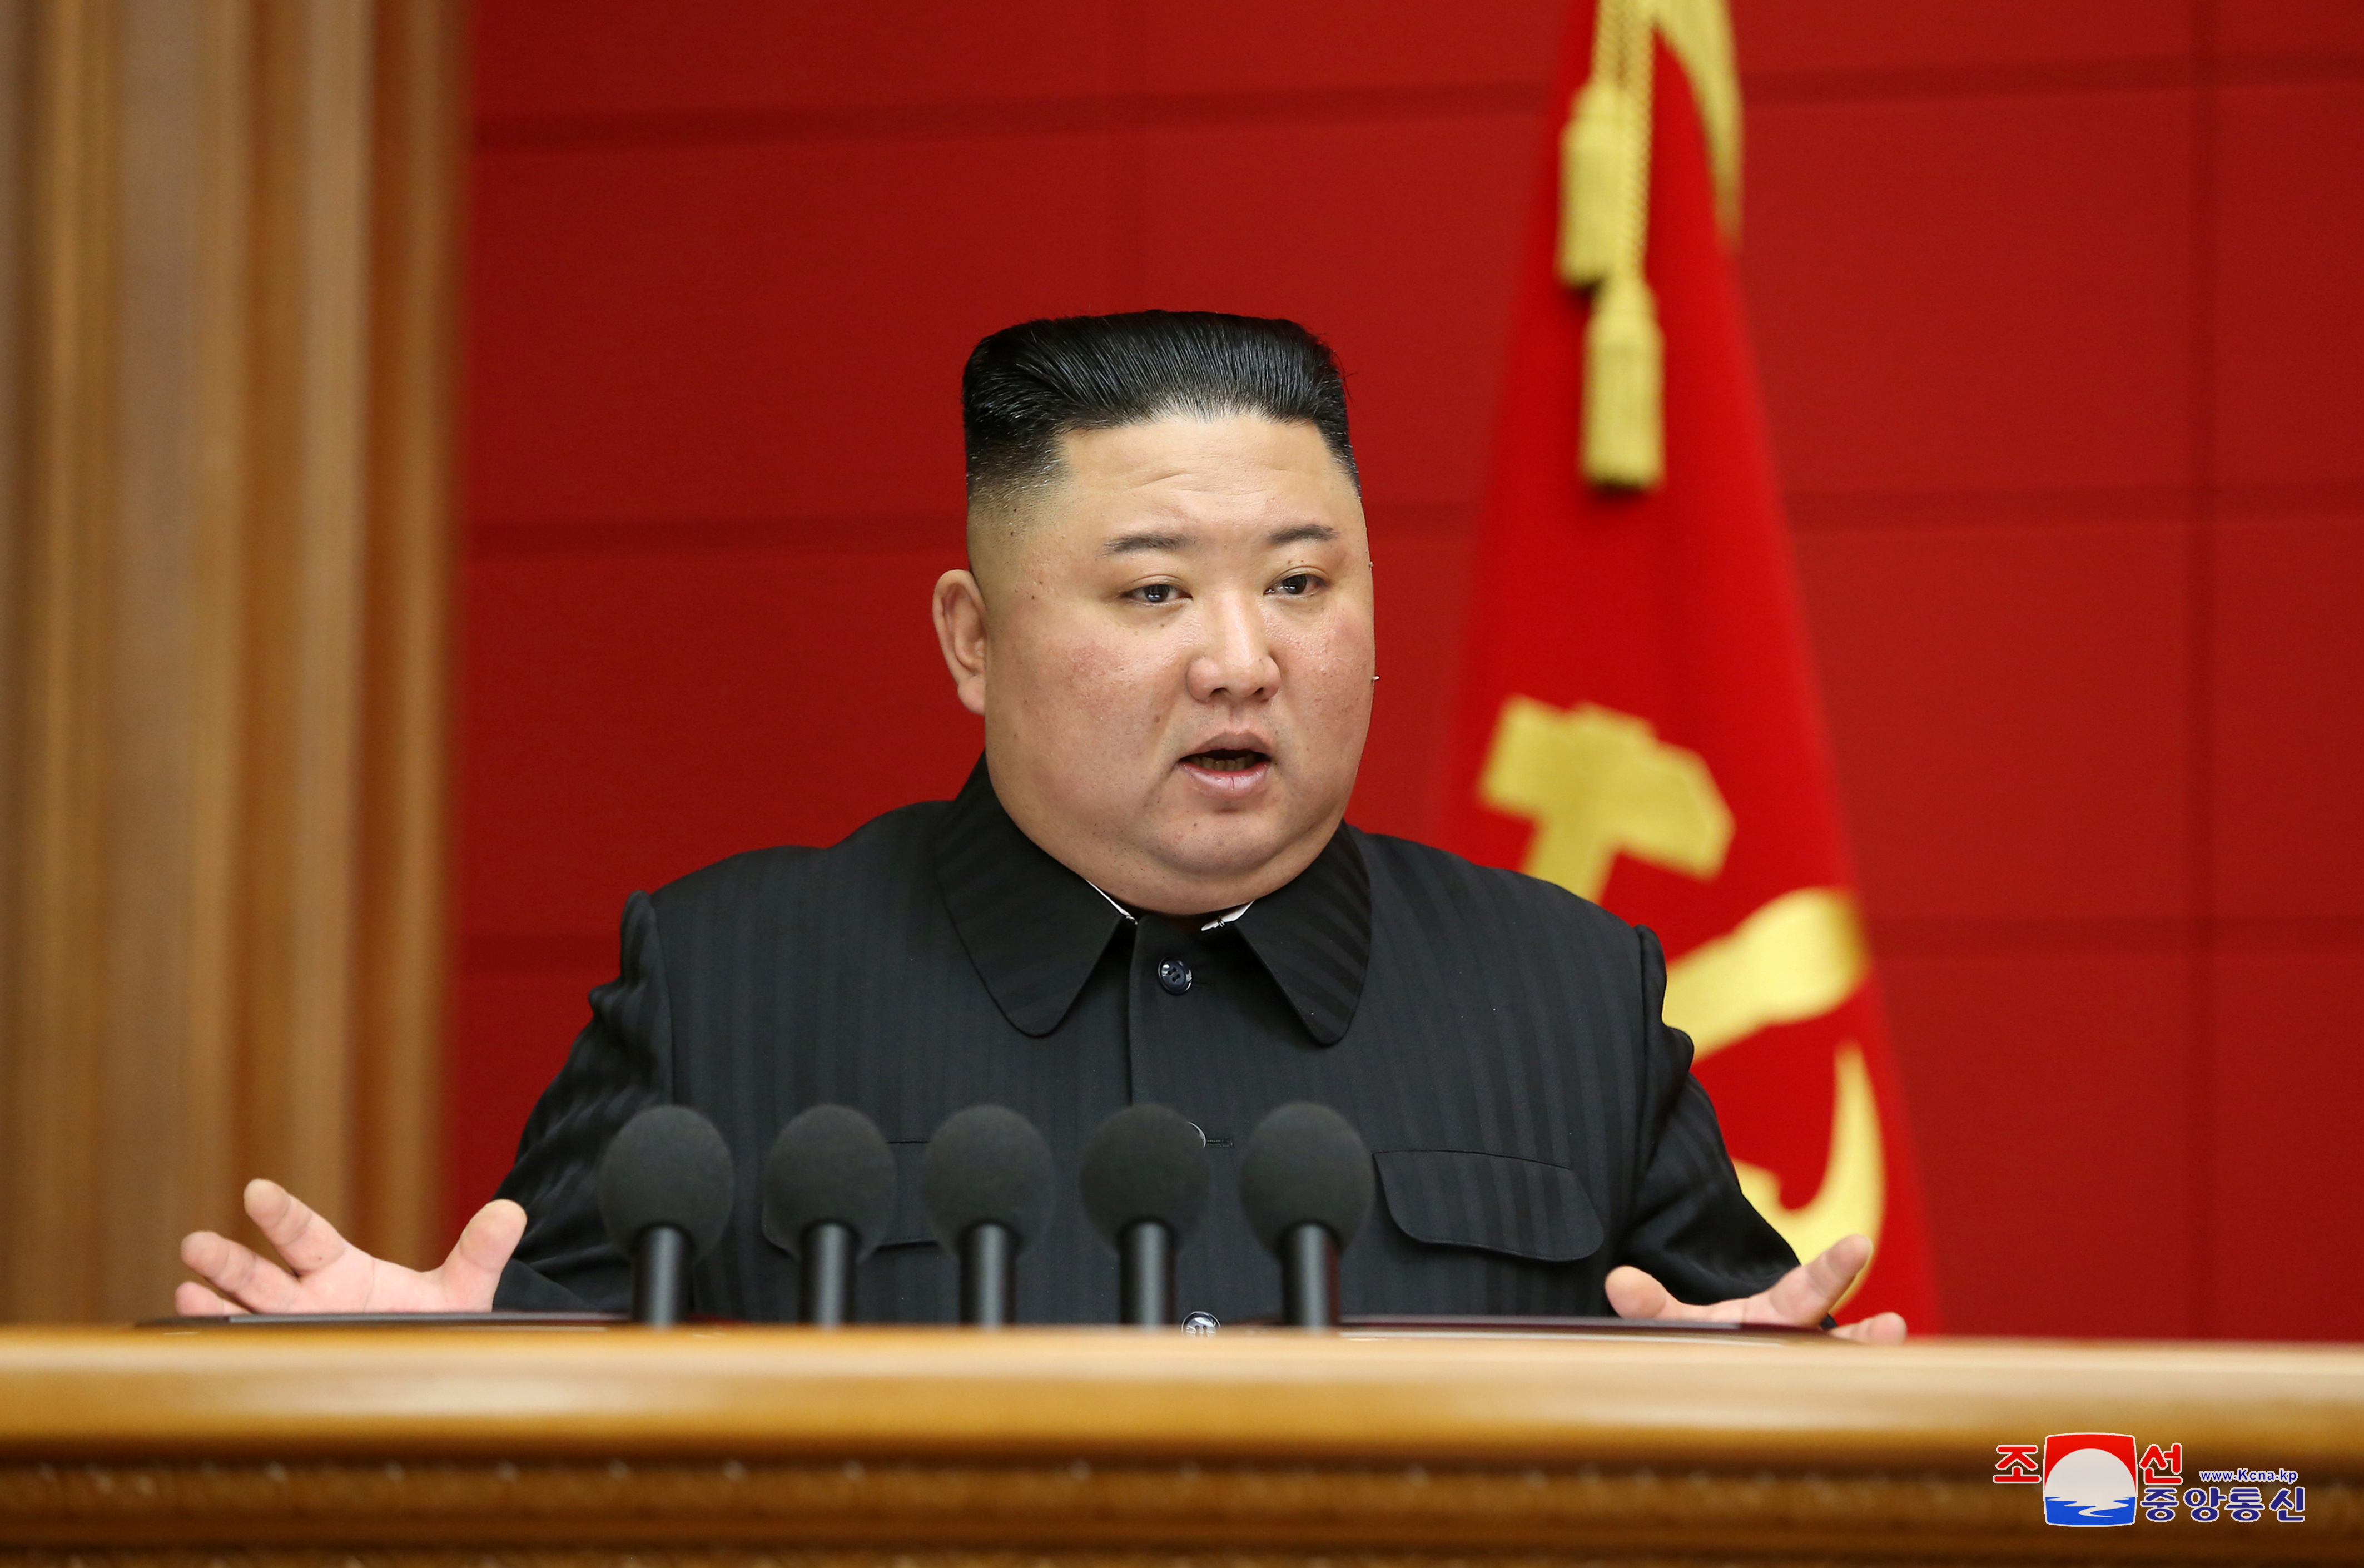 North Korea's Kim meets senior officials to address economy - KCNA | Reuters